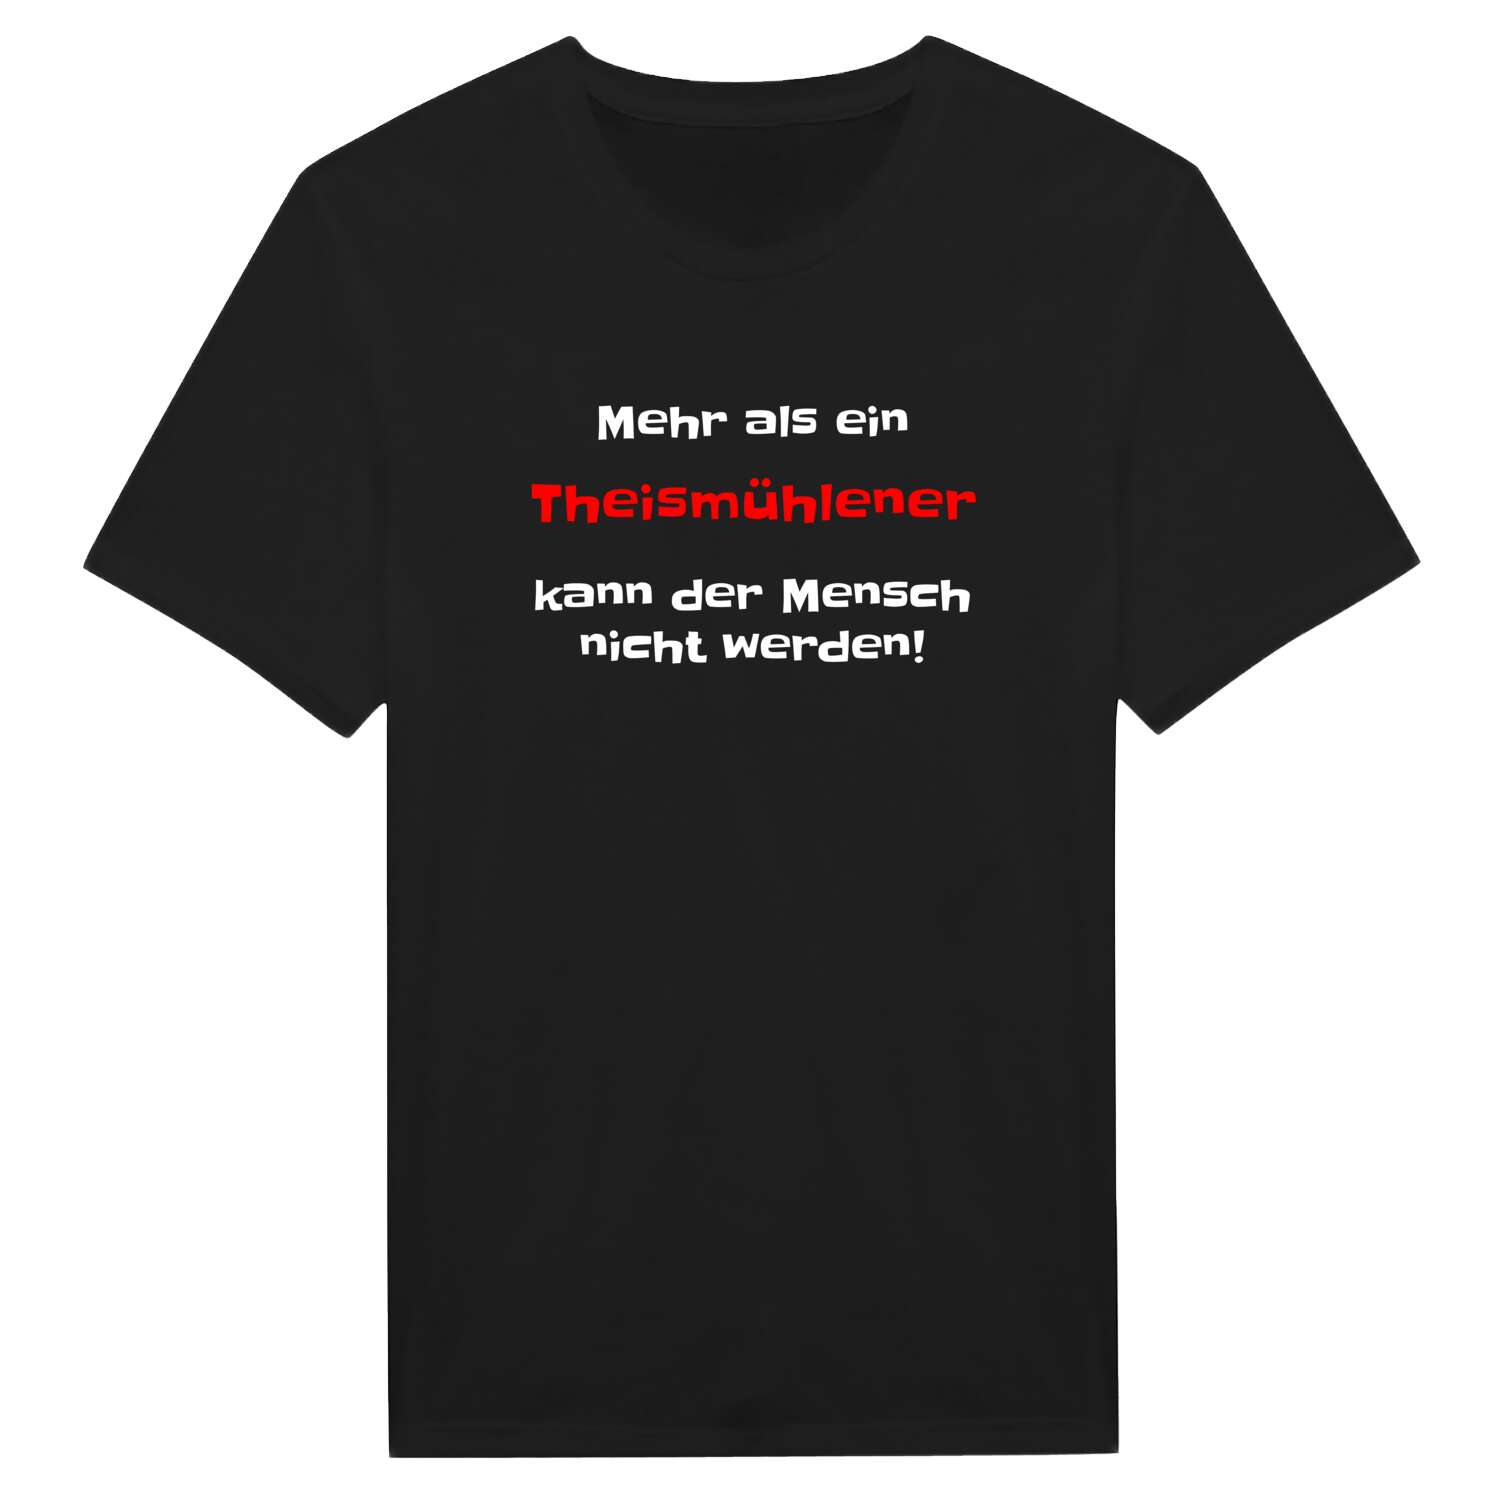 Theismühlen T-Shirt »Mehr als ein«